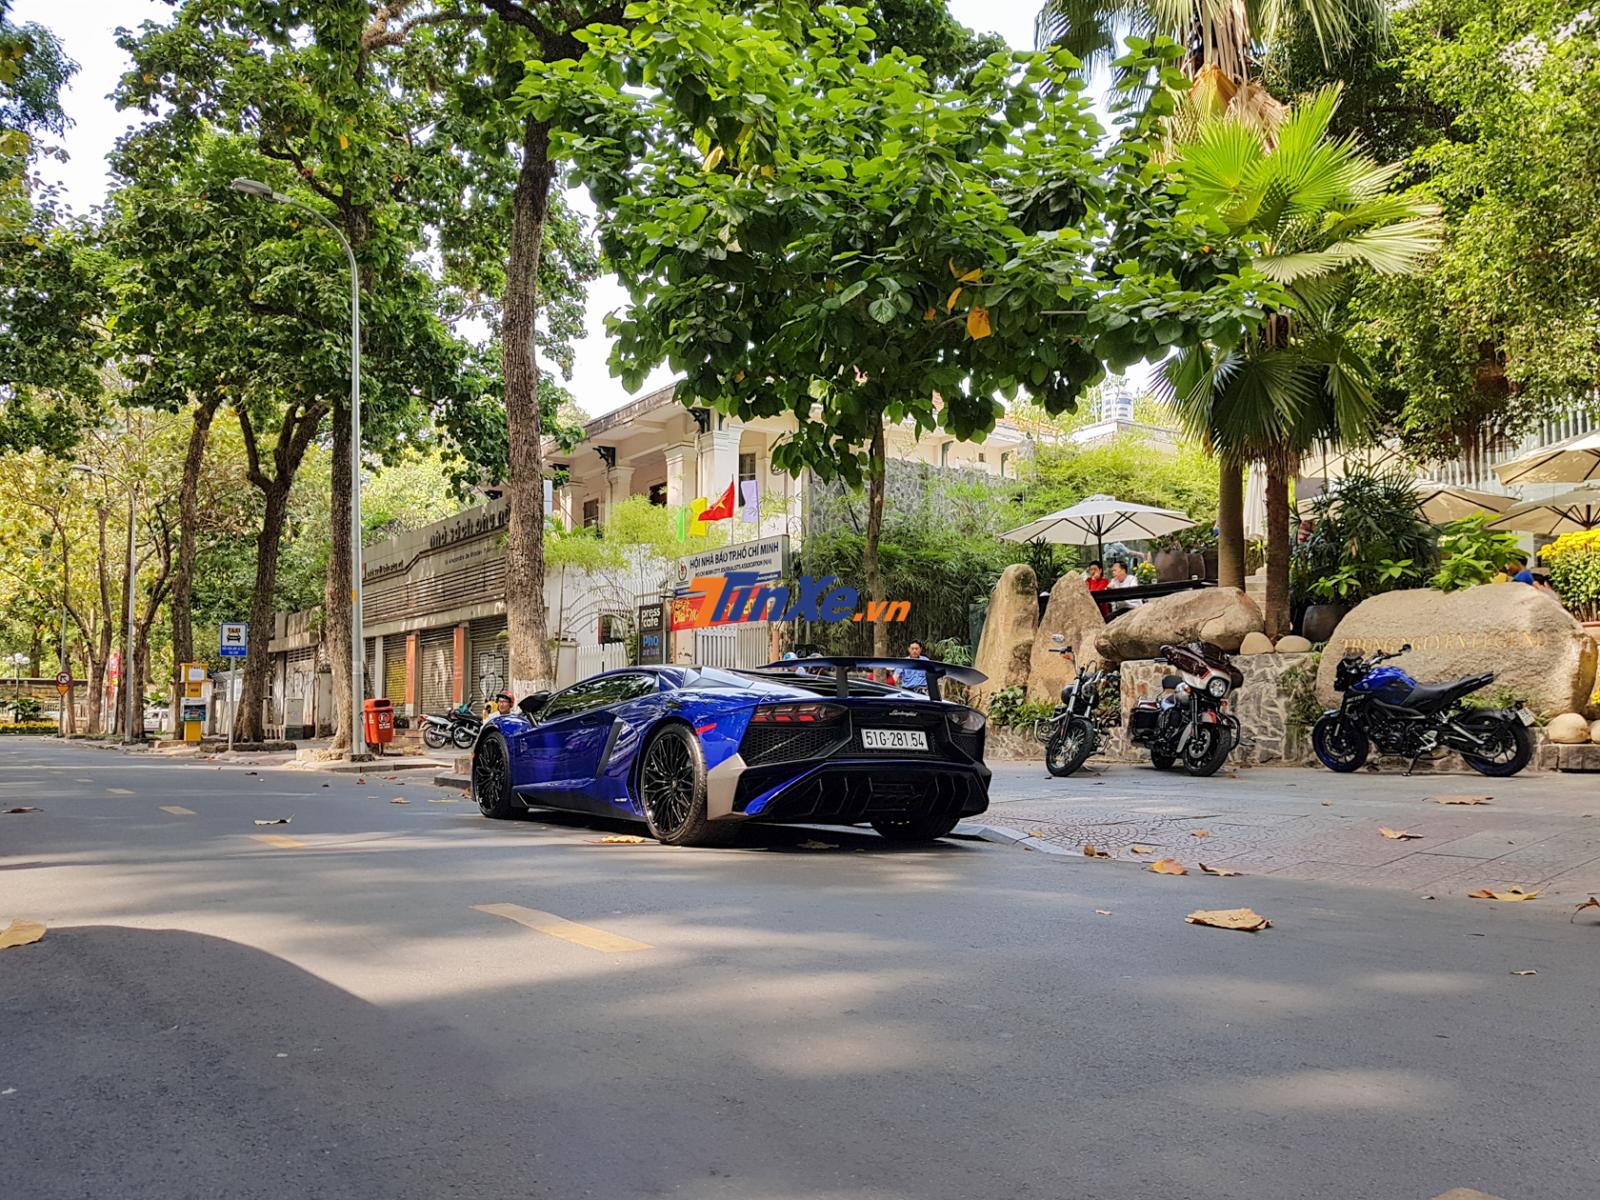 Hiện mức giá rao bán của siêu xe Lamborghini Aventador LP750-4 SV Coupe tại thị trường Việt Nam không dưới 1,28 triệu đô la